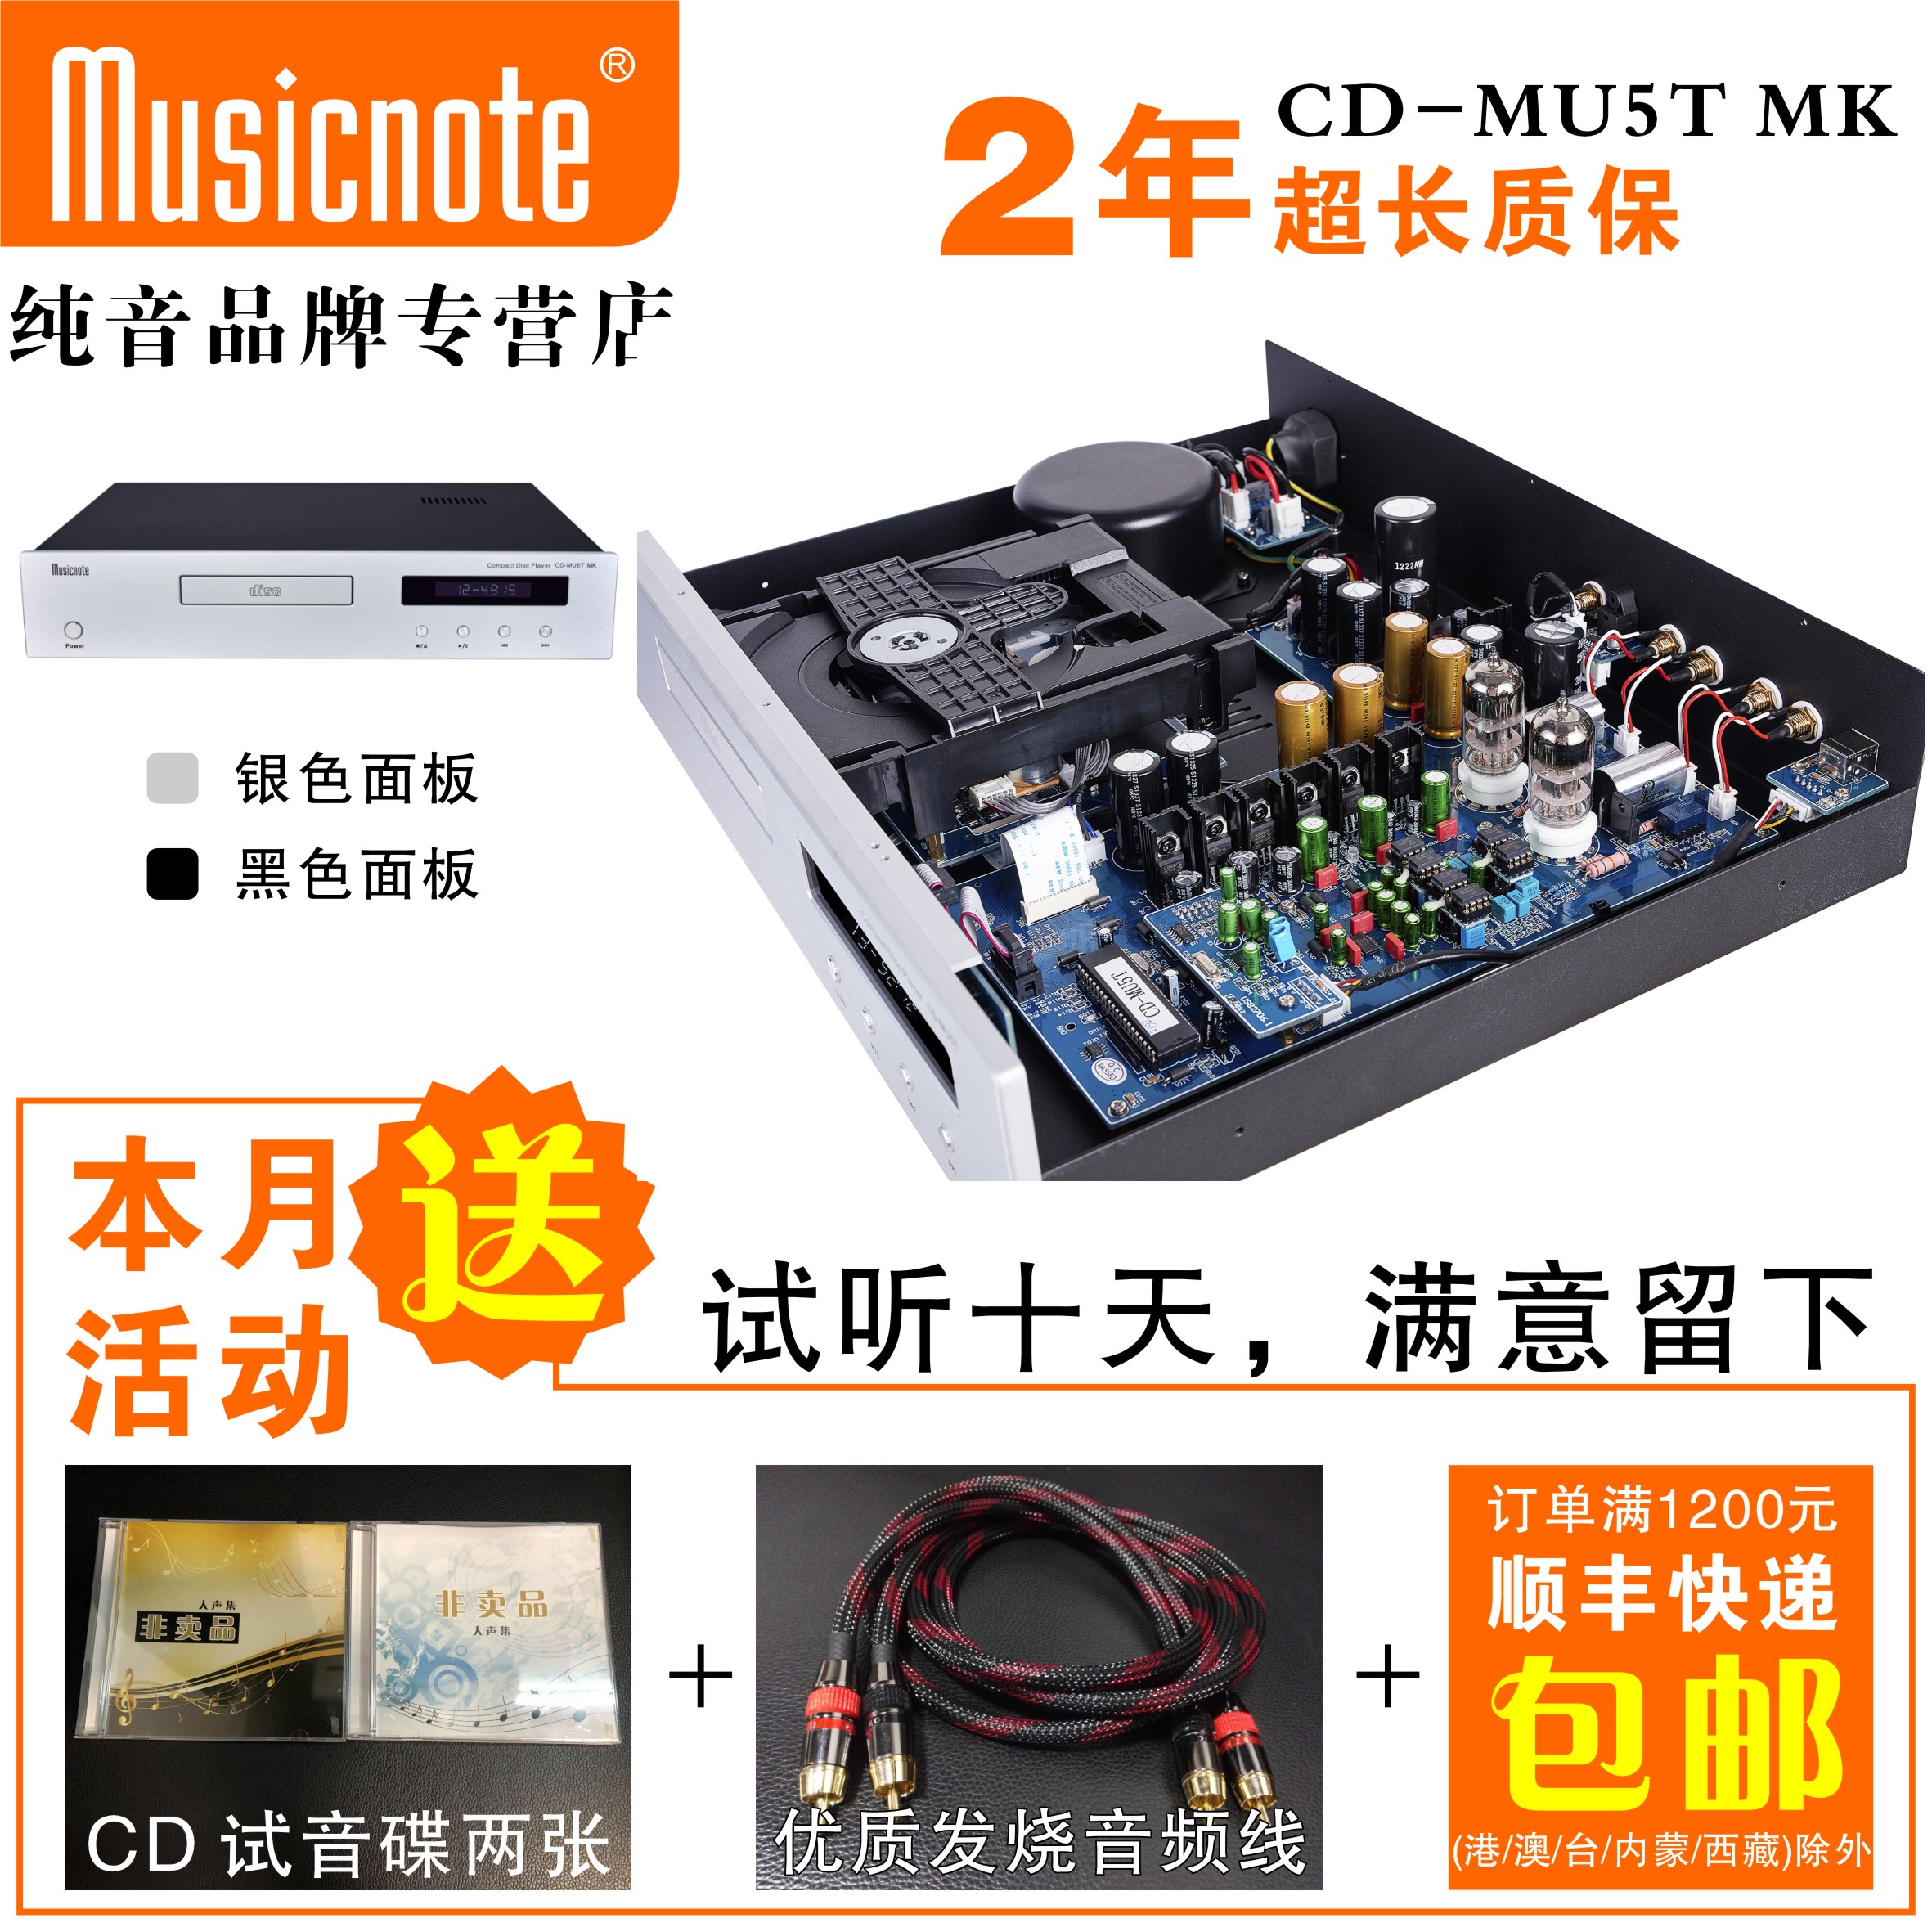 MUSICNOTE | PURE SOUND CD-MU5T MK PROFESSIONAL HIFI BILE CD   CD  USB | BLUETOOTH 